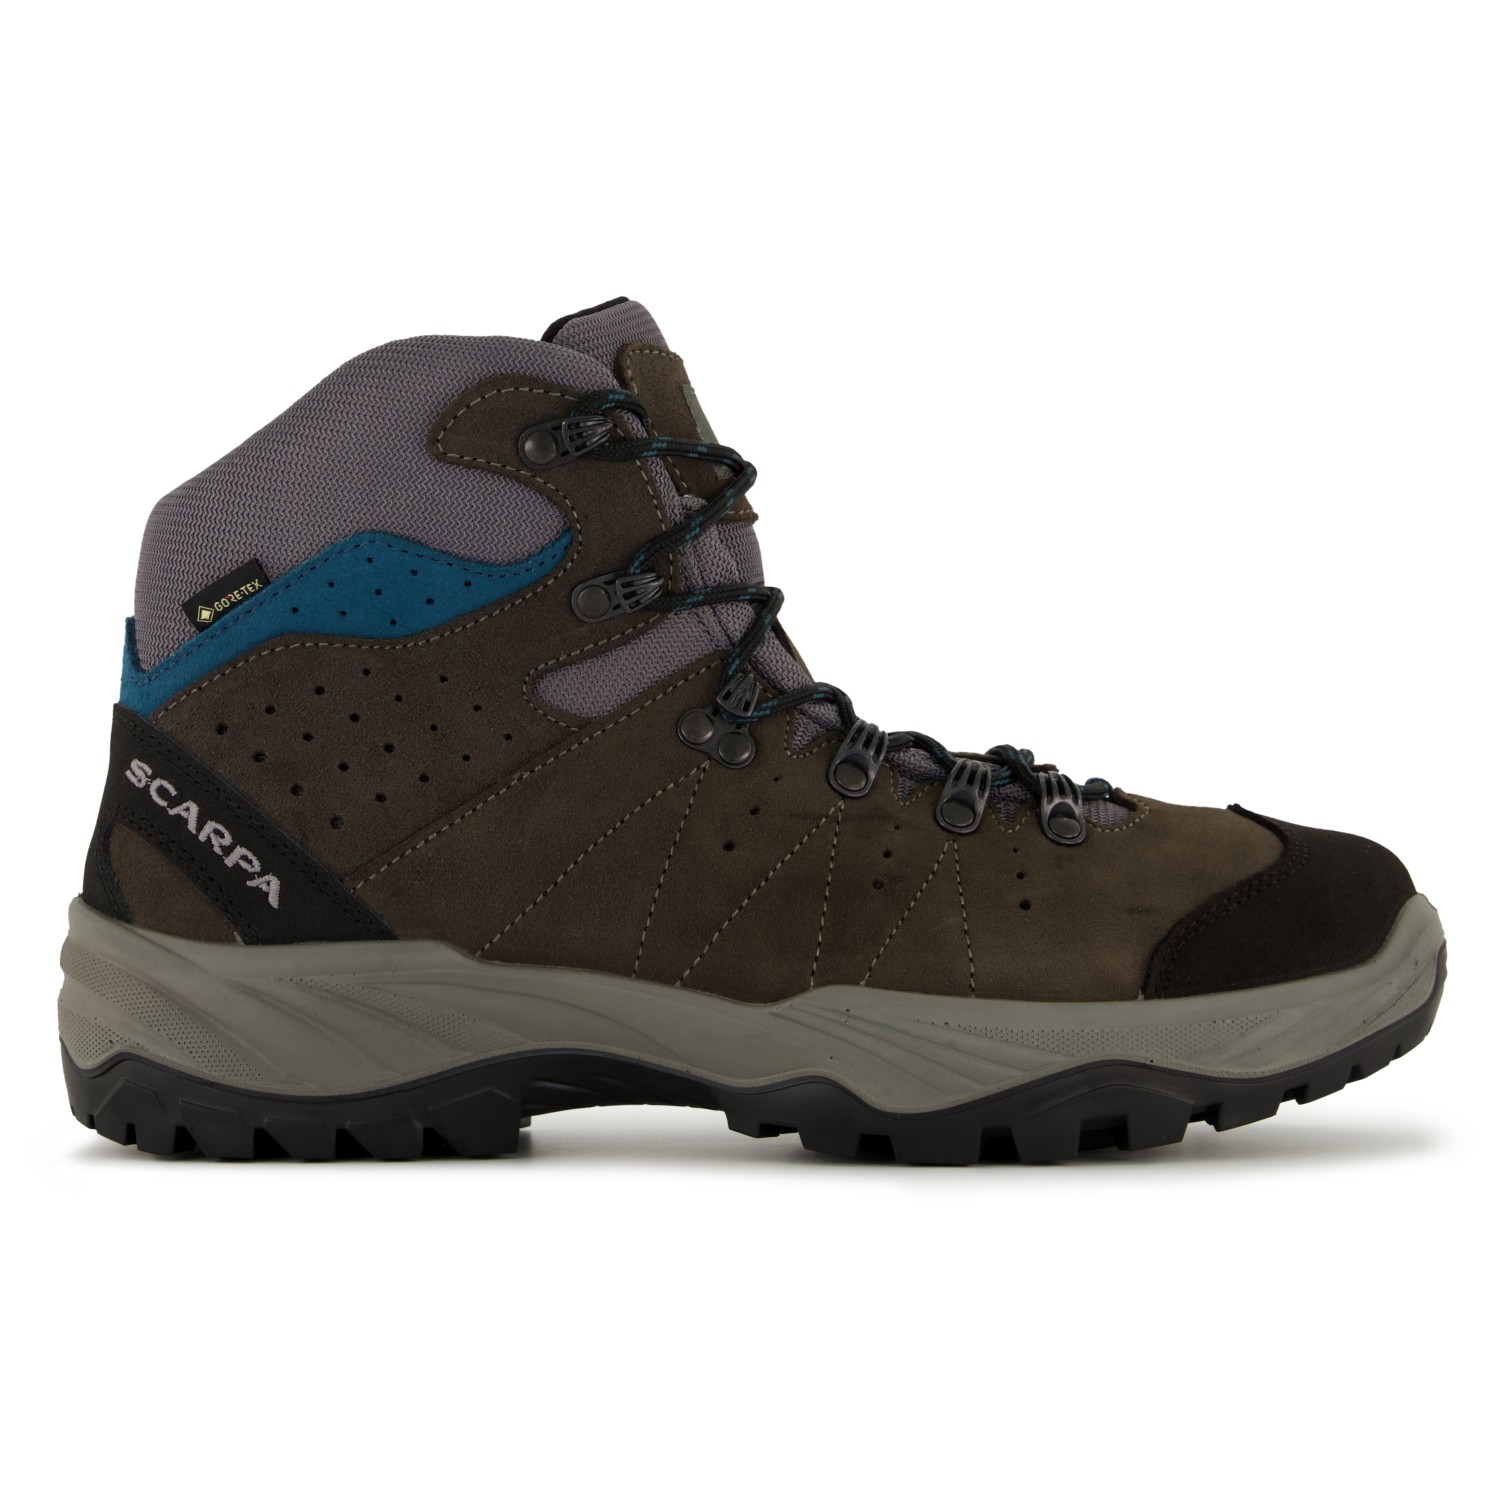 Ботинки для прогулки Scarpa Mistral GTX, цвет Smoke/Lake Blue